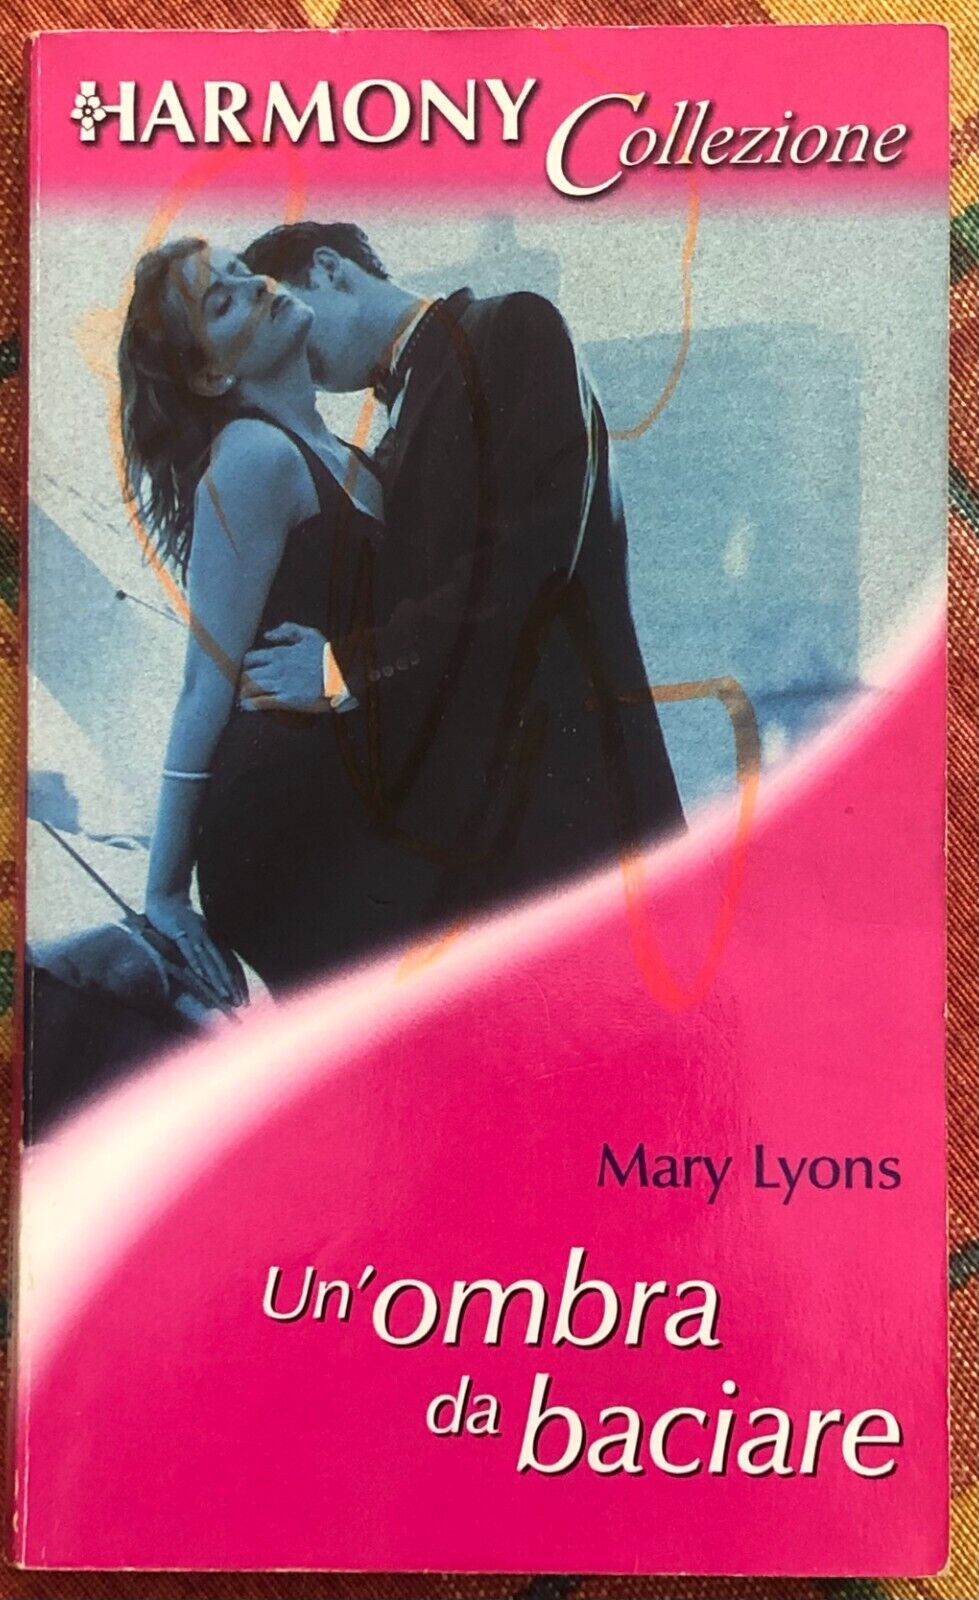  Harmony Collezione n. 1646 - Un?ombra da baciare di Mary Lyons, 2001, Harleq